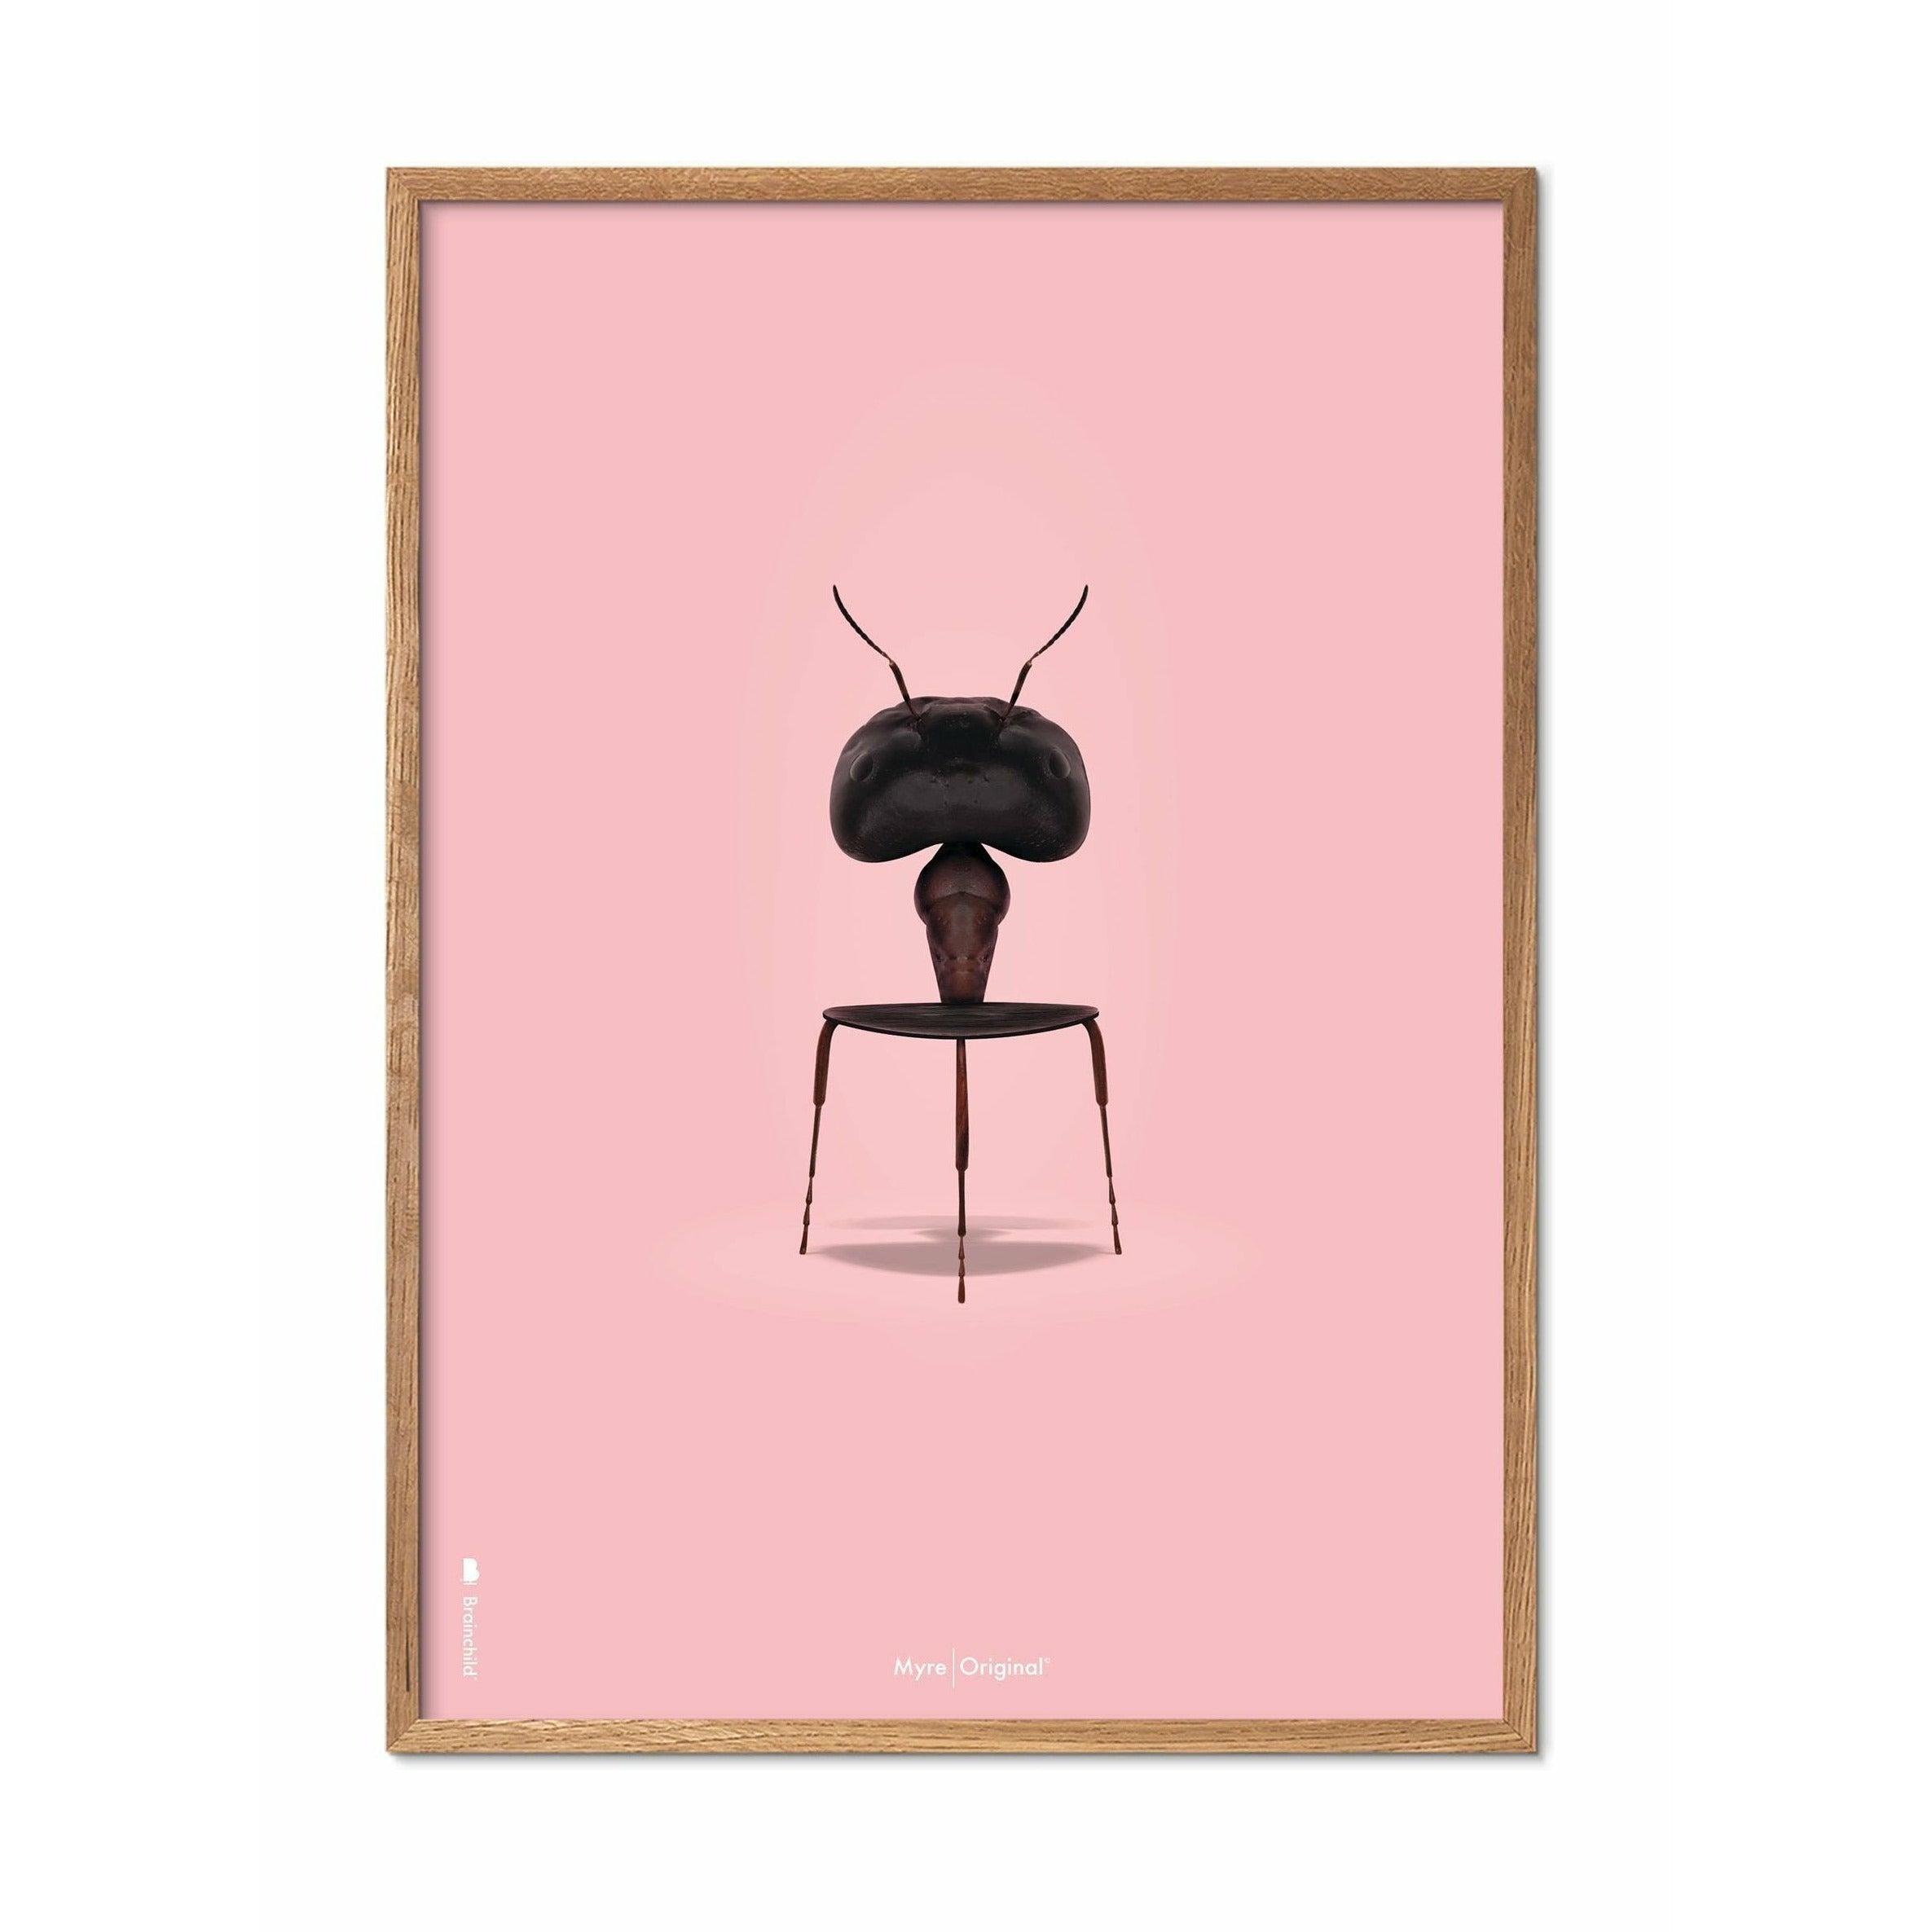 Brainchild Ant Classic plakát, rám vyrobený z lehkého dřeva 70x100 cm, růžové pozadí